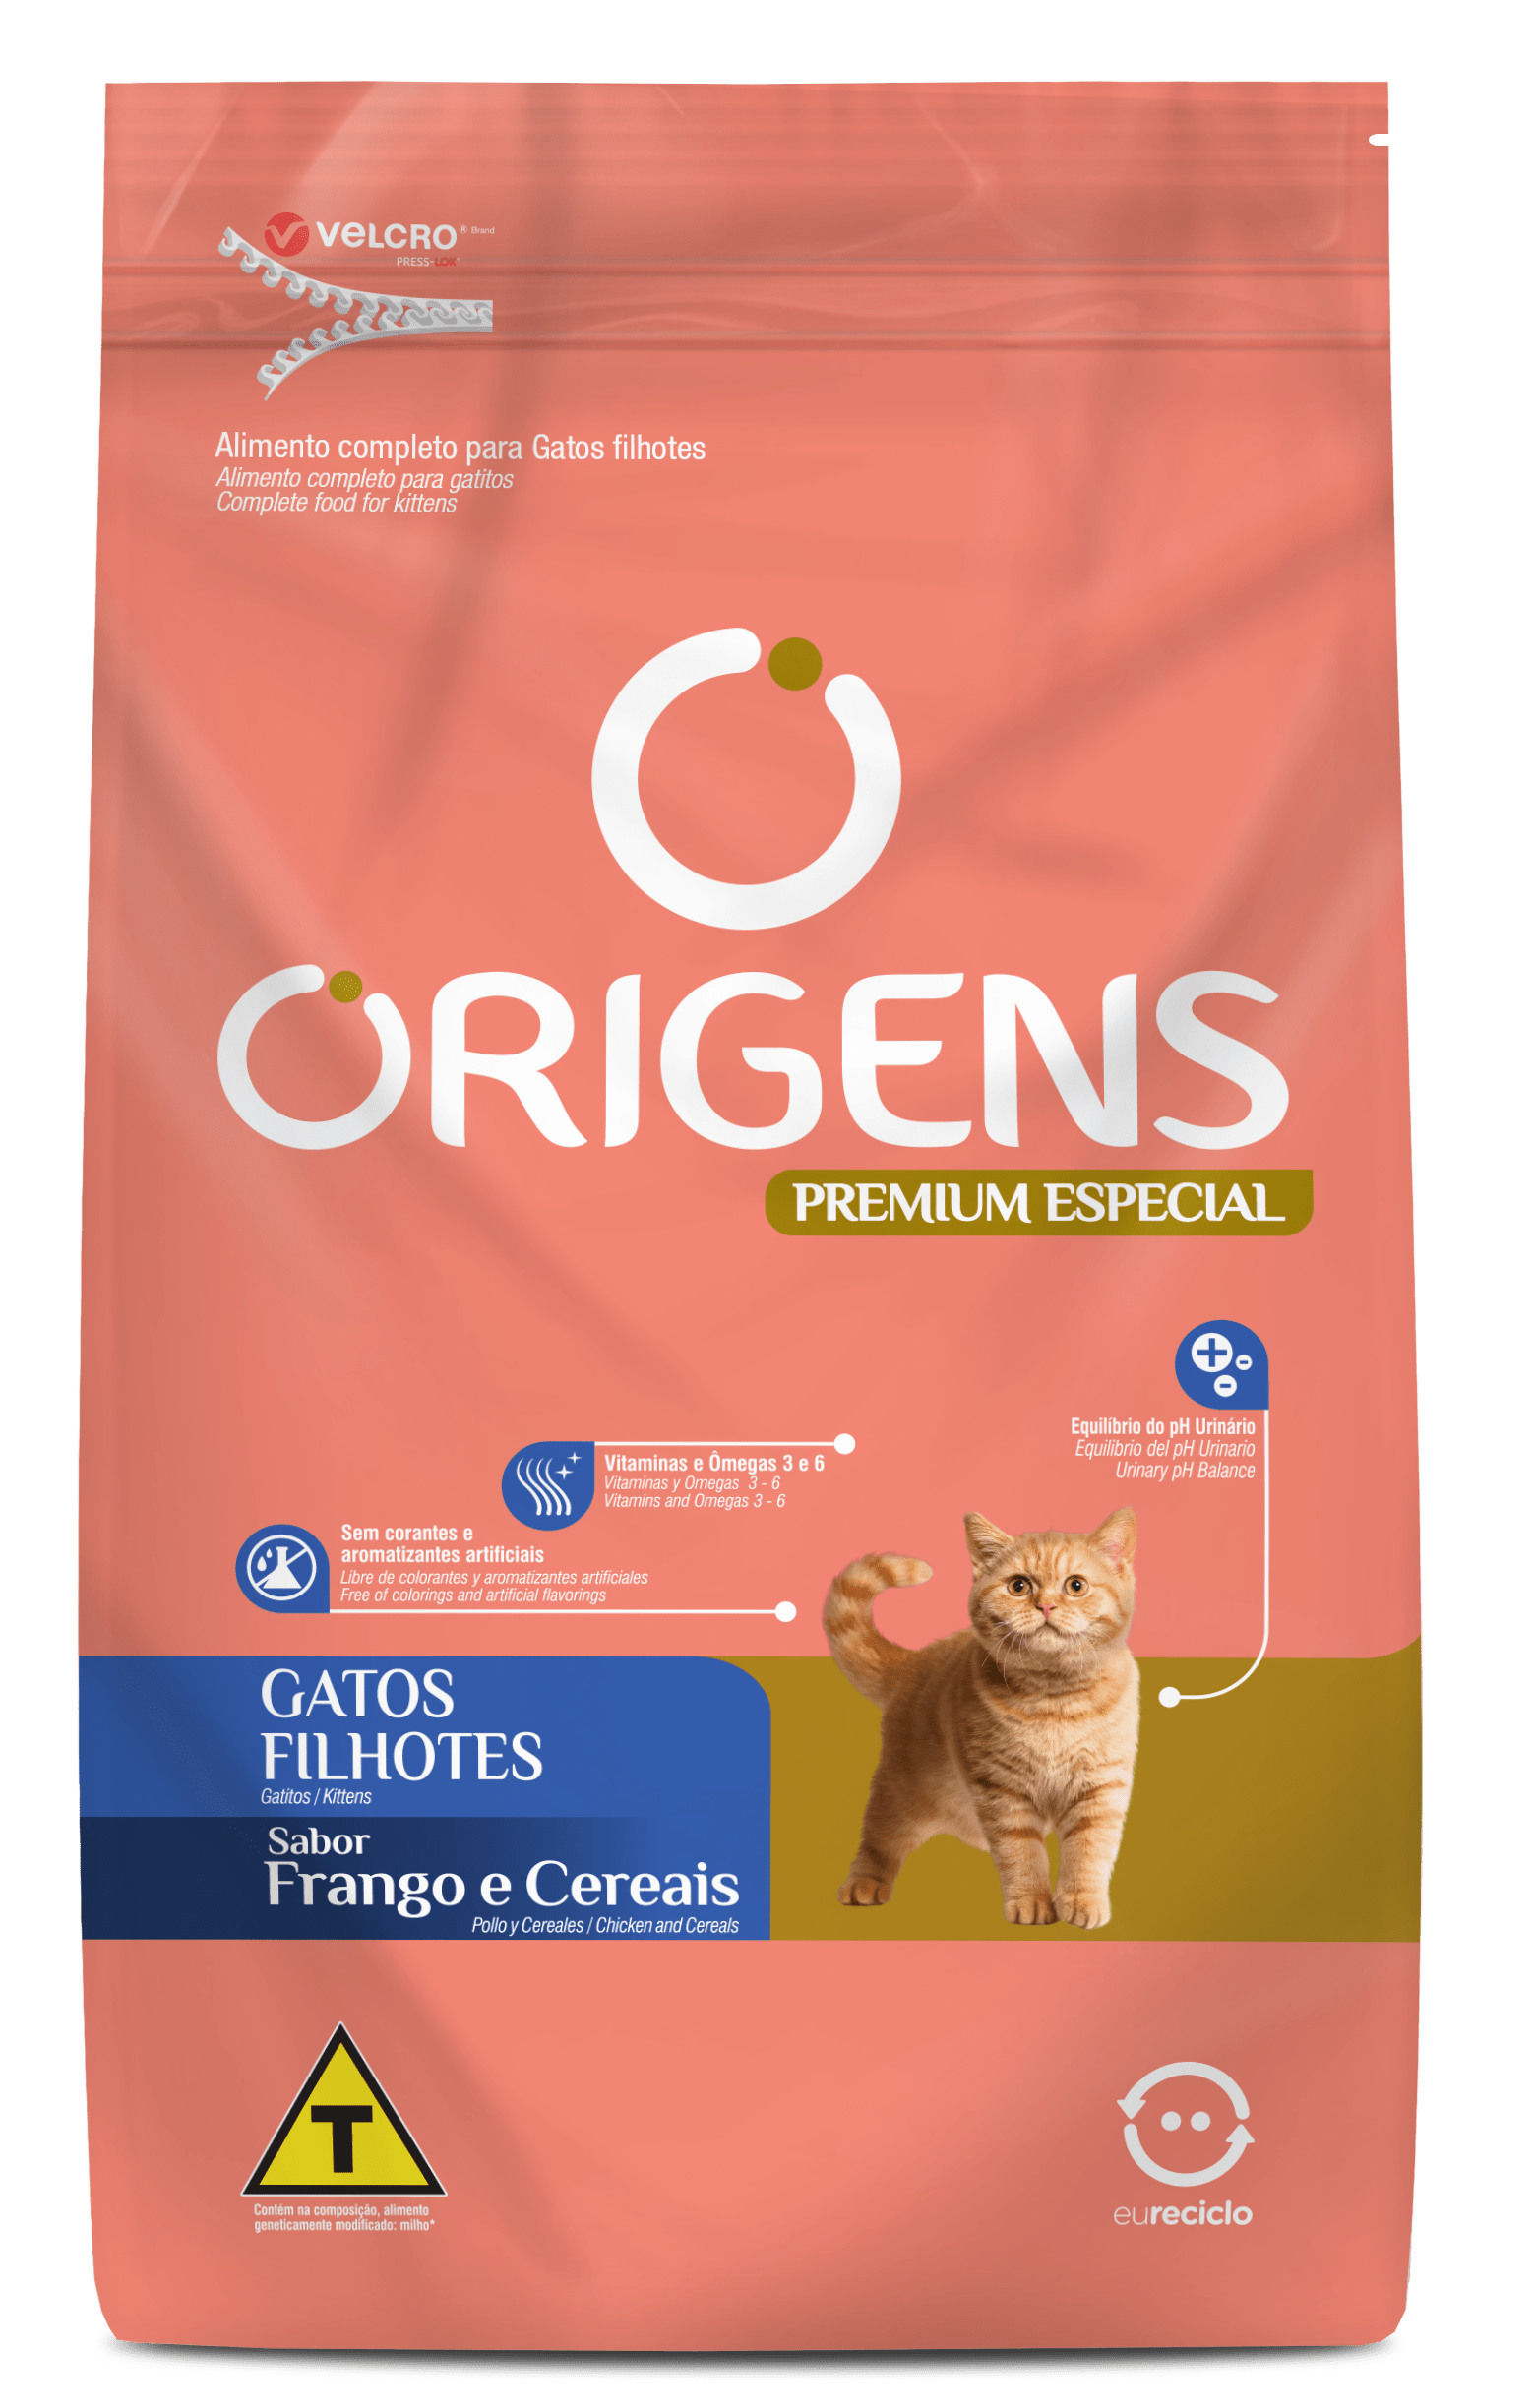 Origens Premium Especial Gatos Filhotes Sabor Frango e Cereais